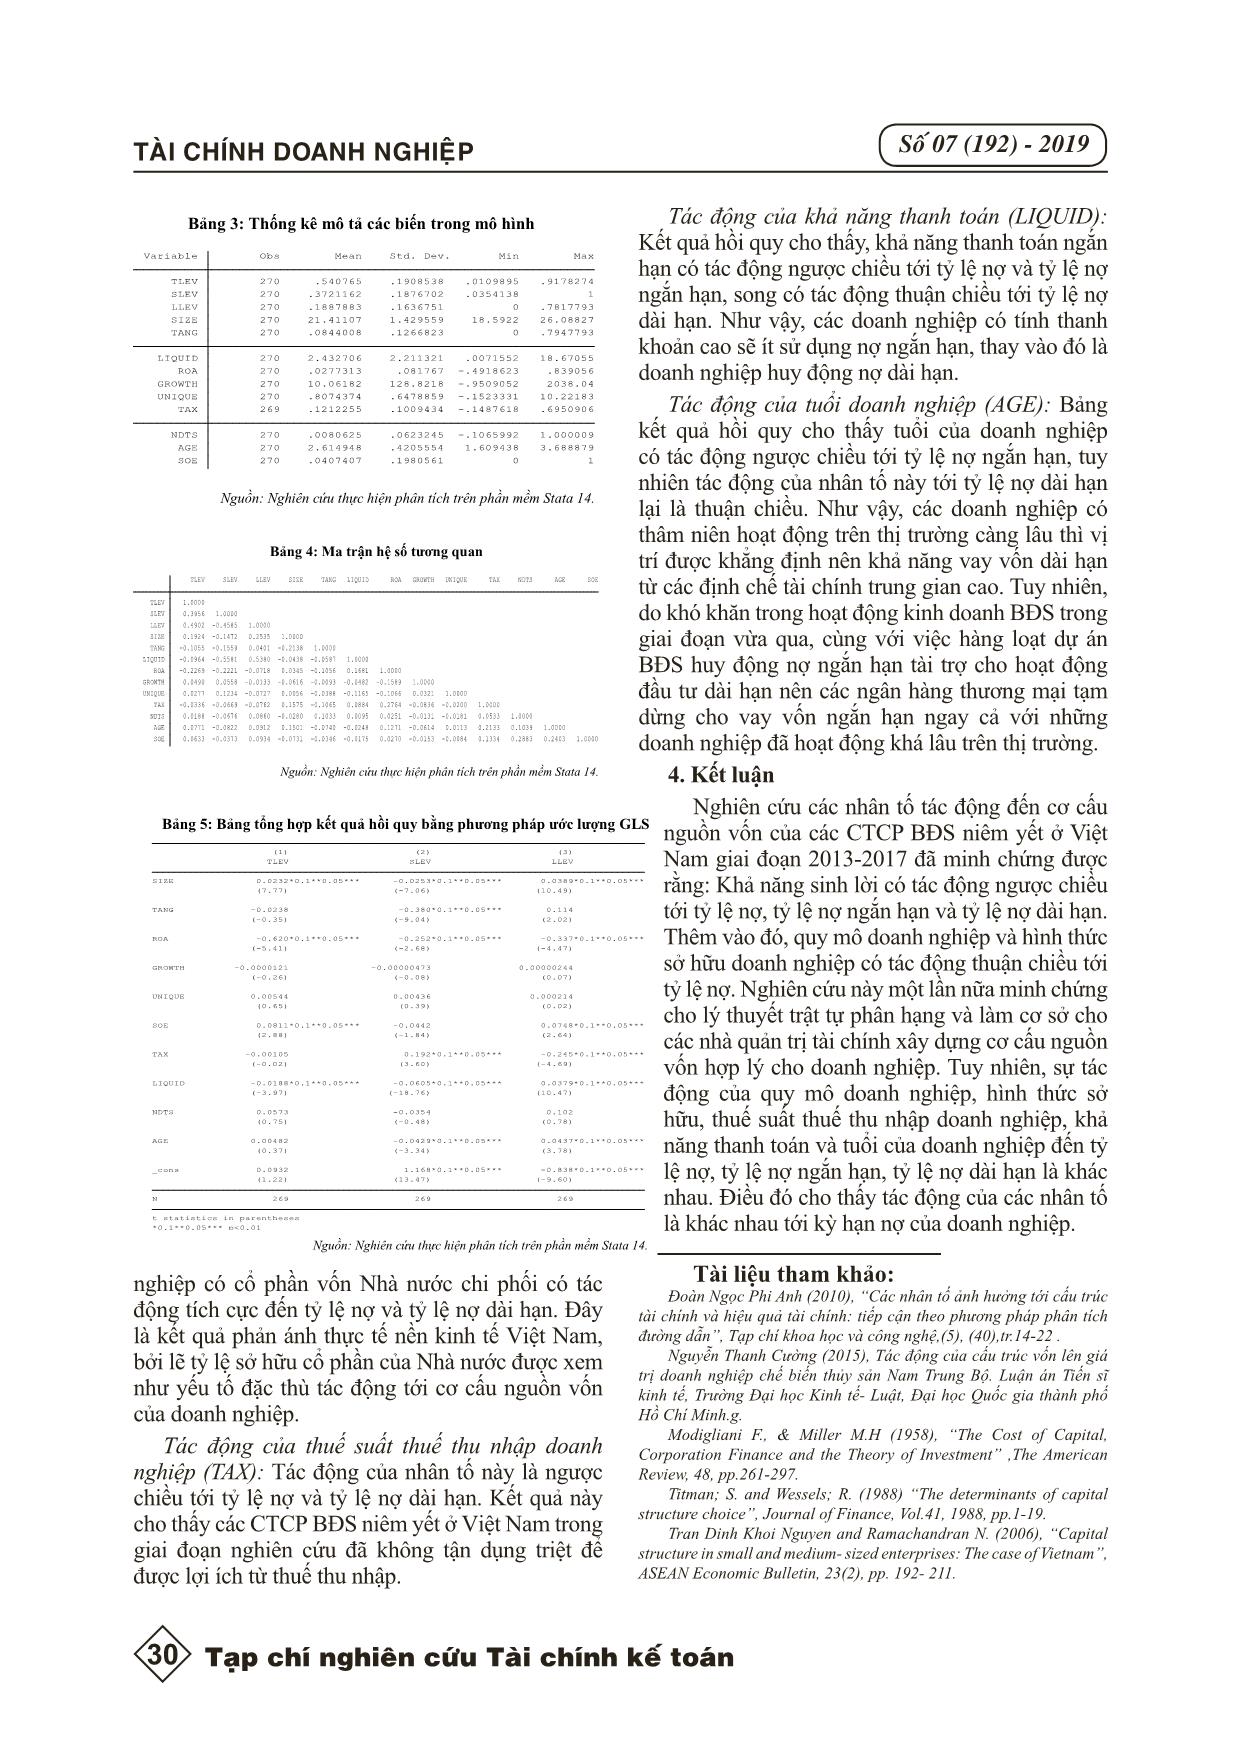 Các nhân tố tác động đến cơ cấu nguồn vốn: nhìn từ góc độ ngành bất động sản Việt Nam trang 4